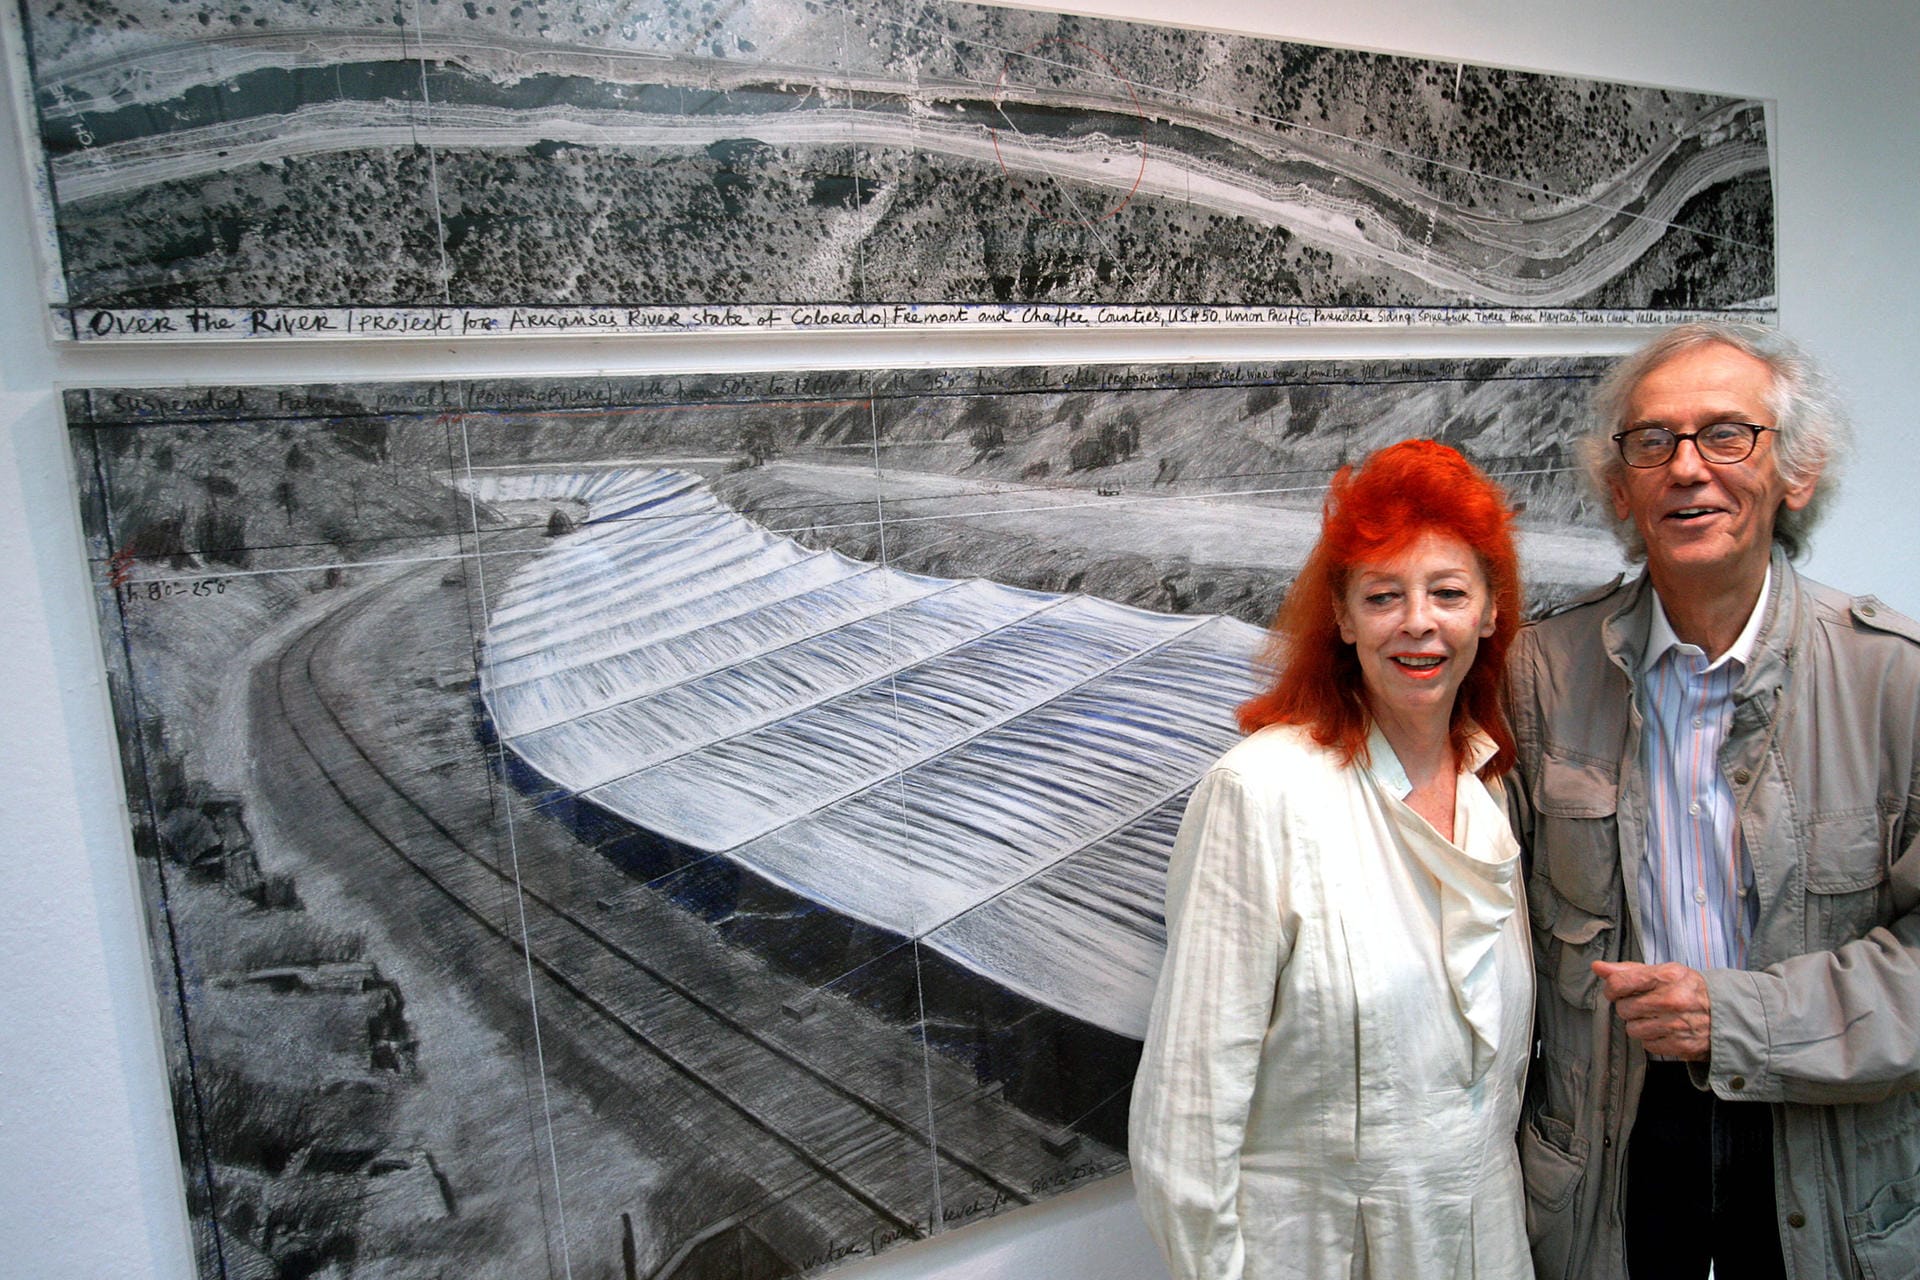 2006 präsentierten Christo und Jeanne-Claude ihr neuestes Projekt "Over the River". Das Künstlerpaar hat diese Idee jedoch nie umgesetzt.